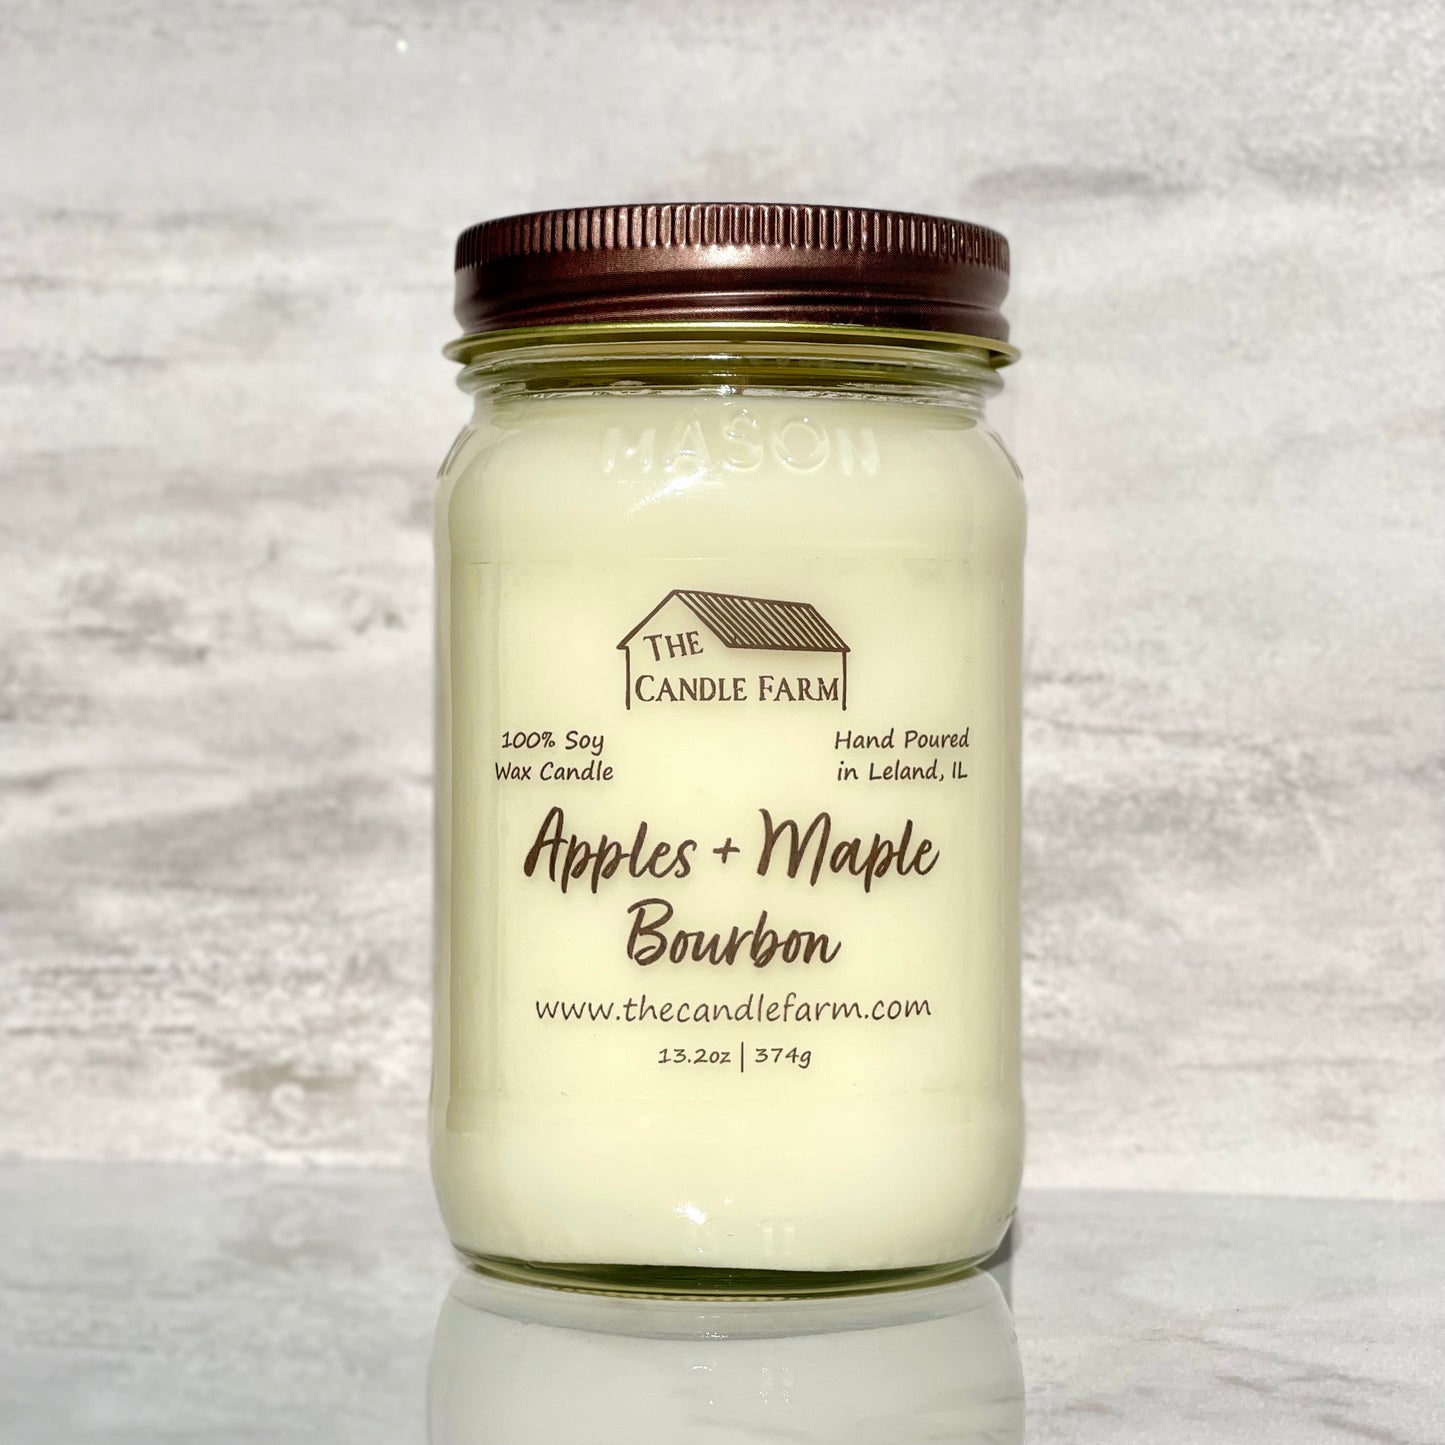 Apples + Maple Bourbon 16 oz candle